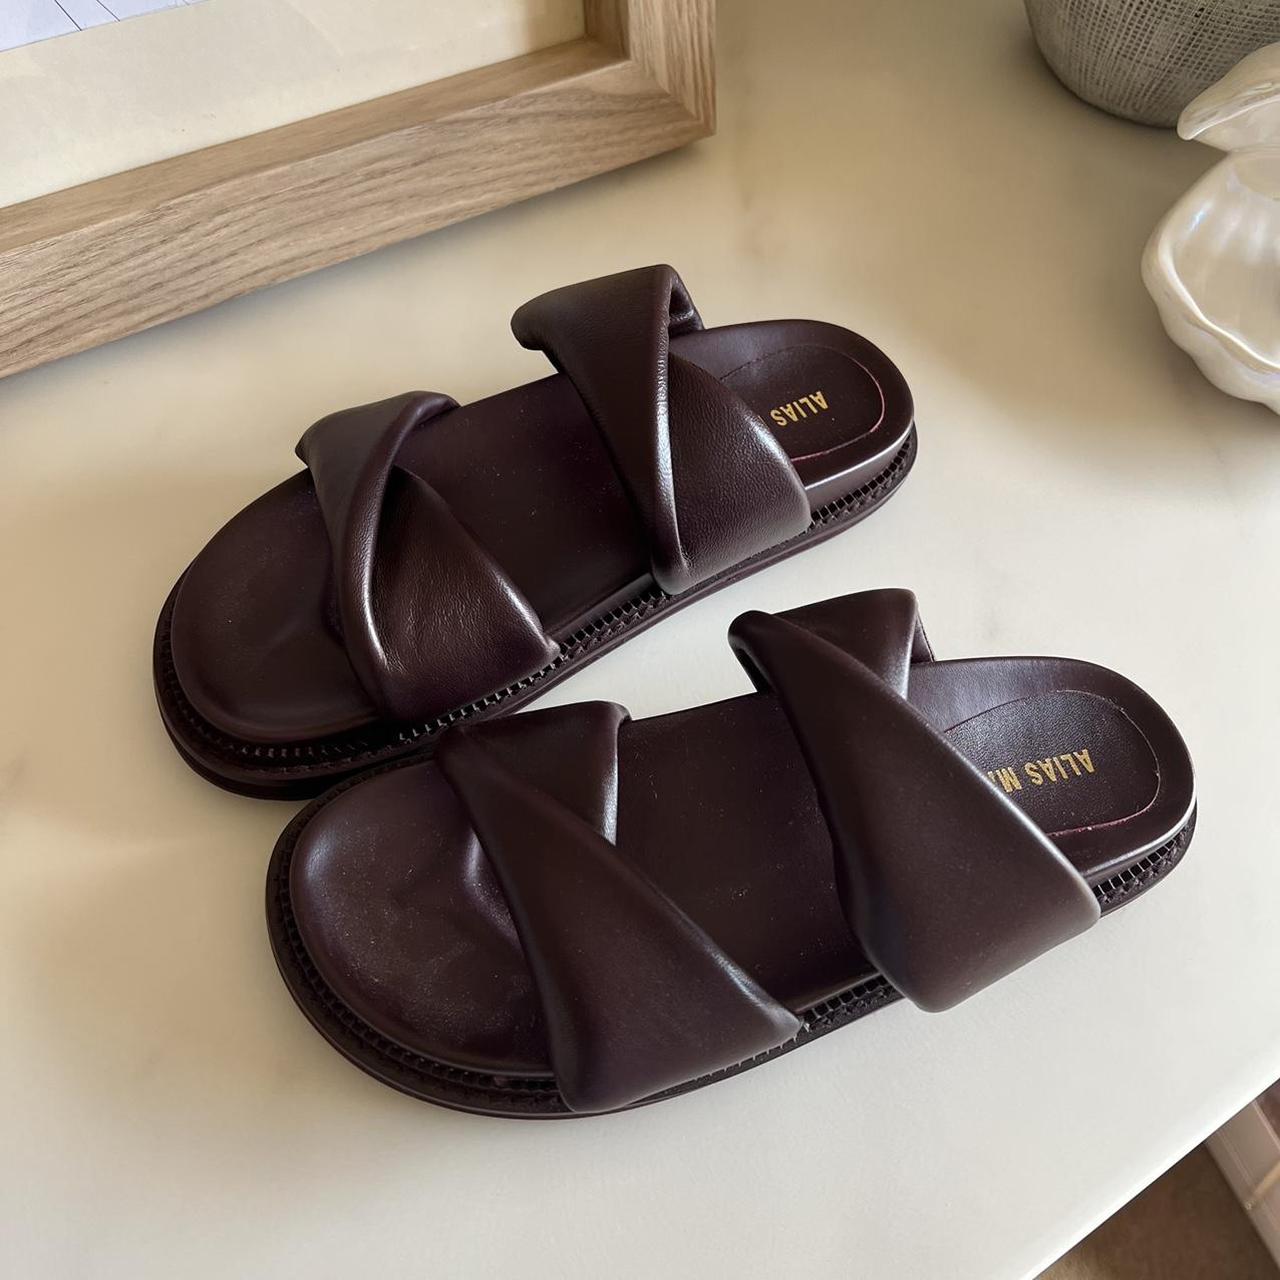 Alias Mae Paris plum leather slides sandals Size 38,... - Depop